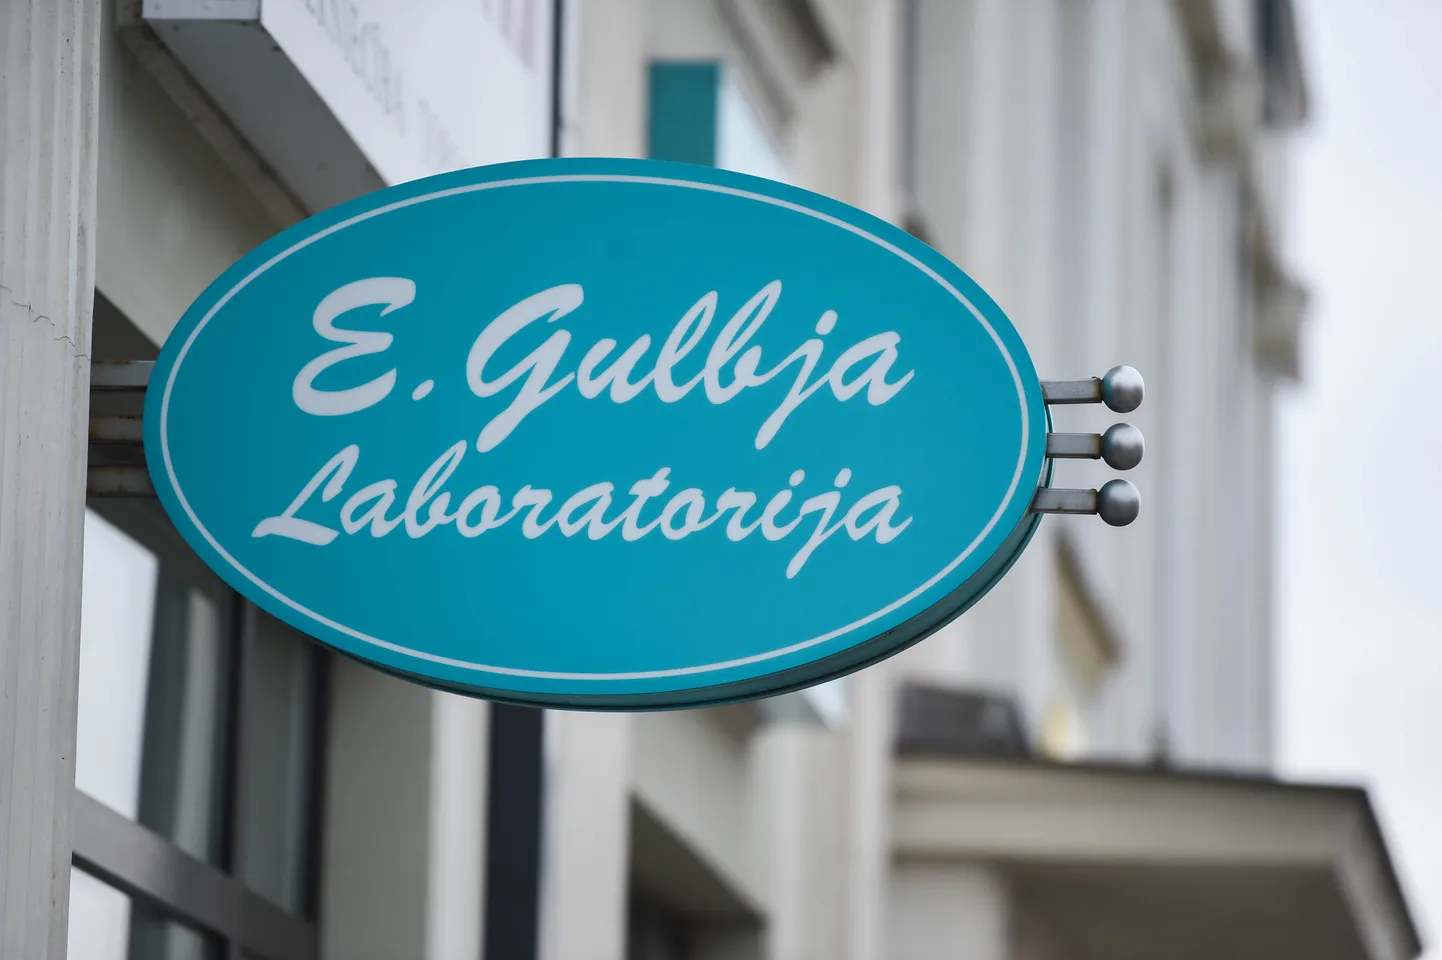 Вывеска E. Gulbja Laboratorija в Валмиере